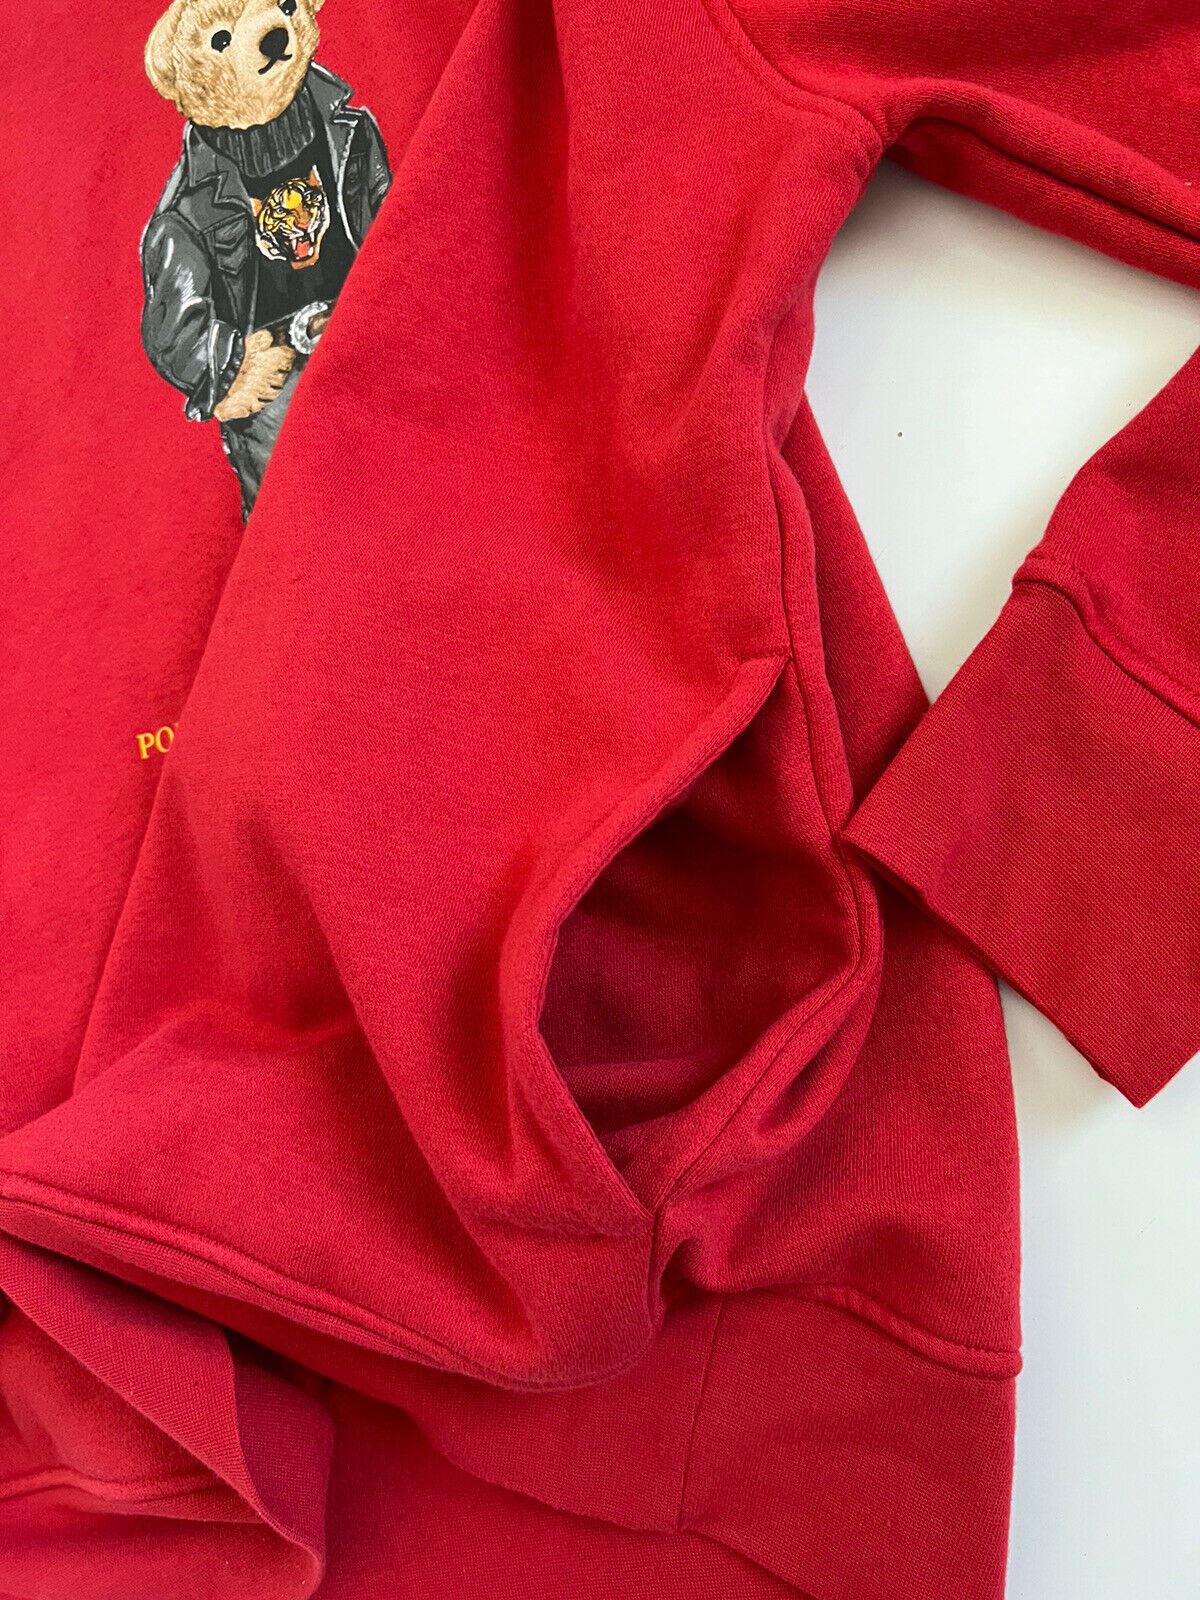 NWT $198 Polo Ralph Lauren Men's Bear Red Fleece Hoodie Sweatshirt Medium